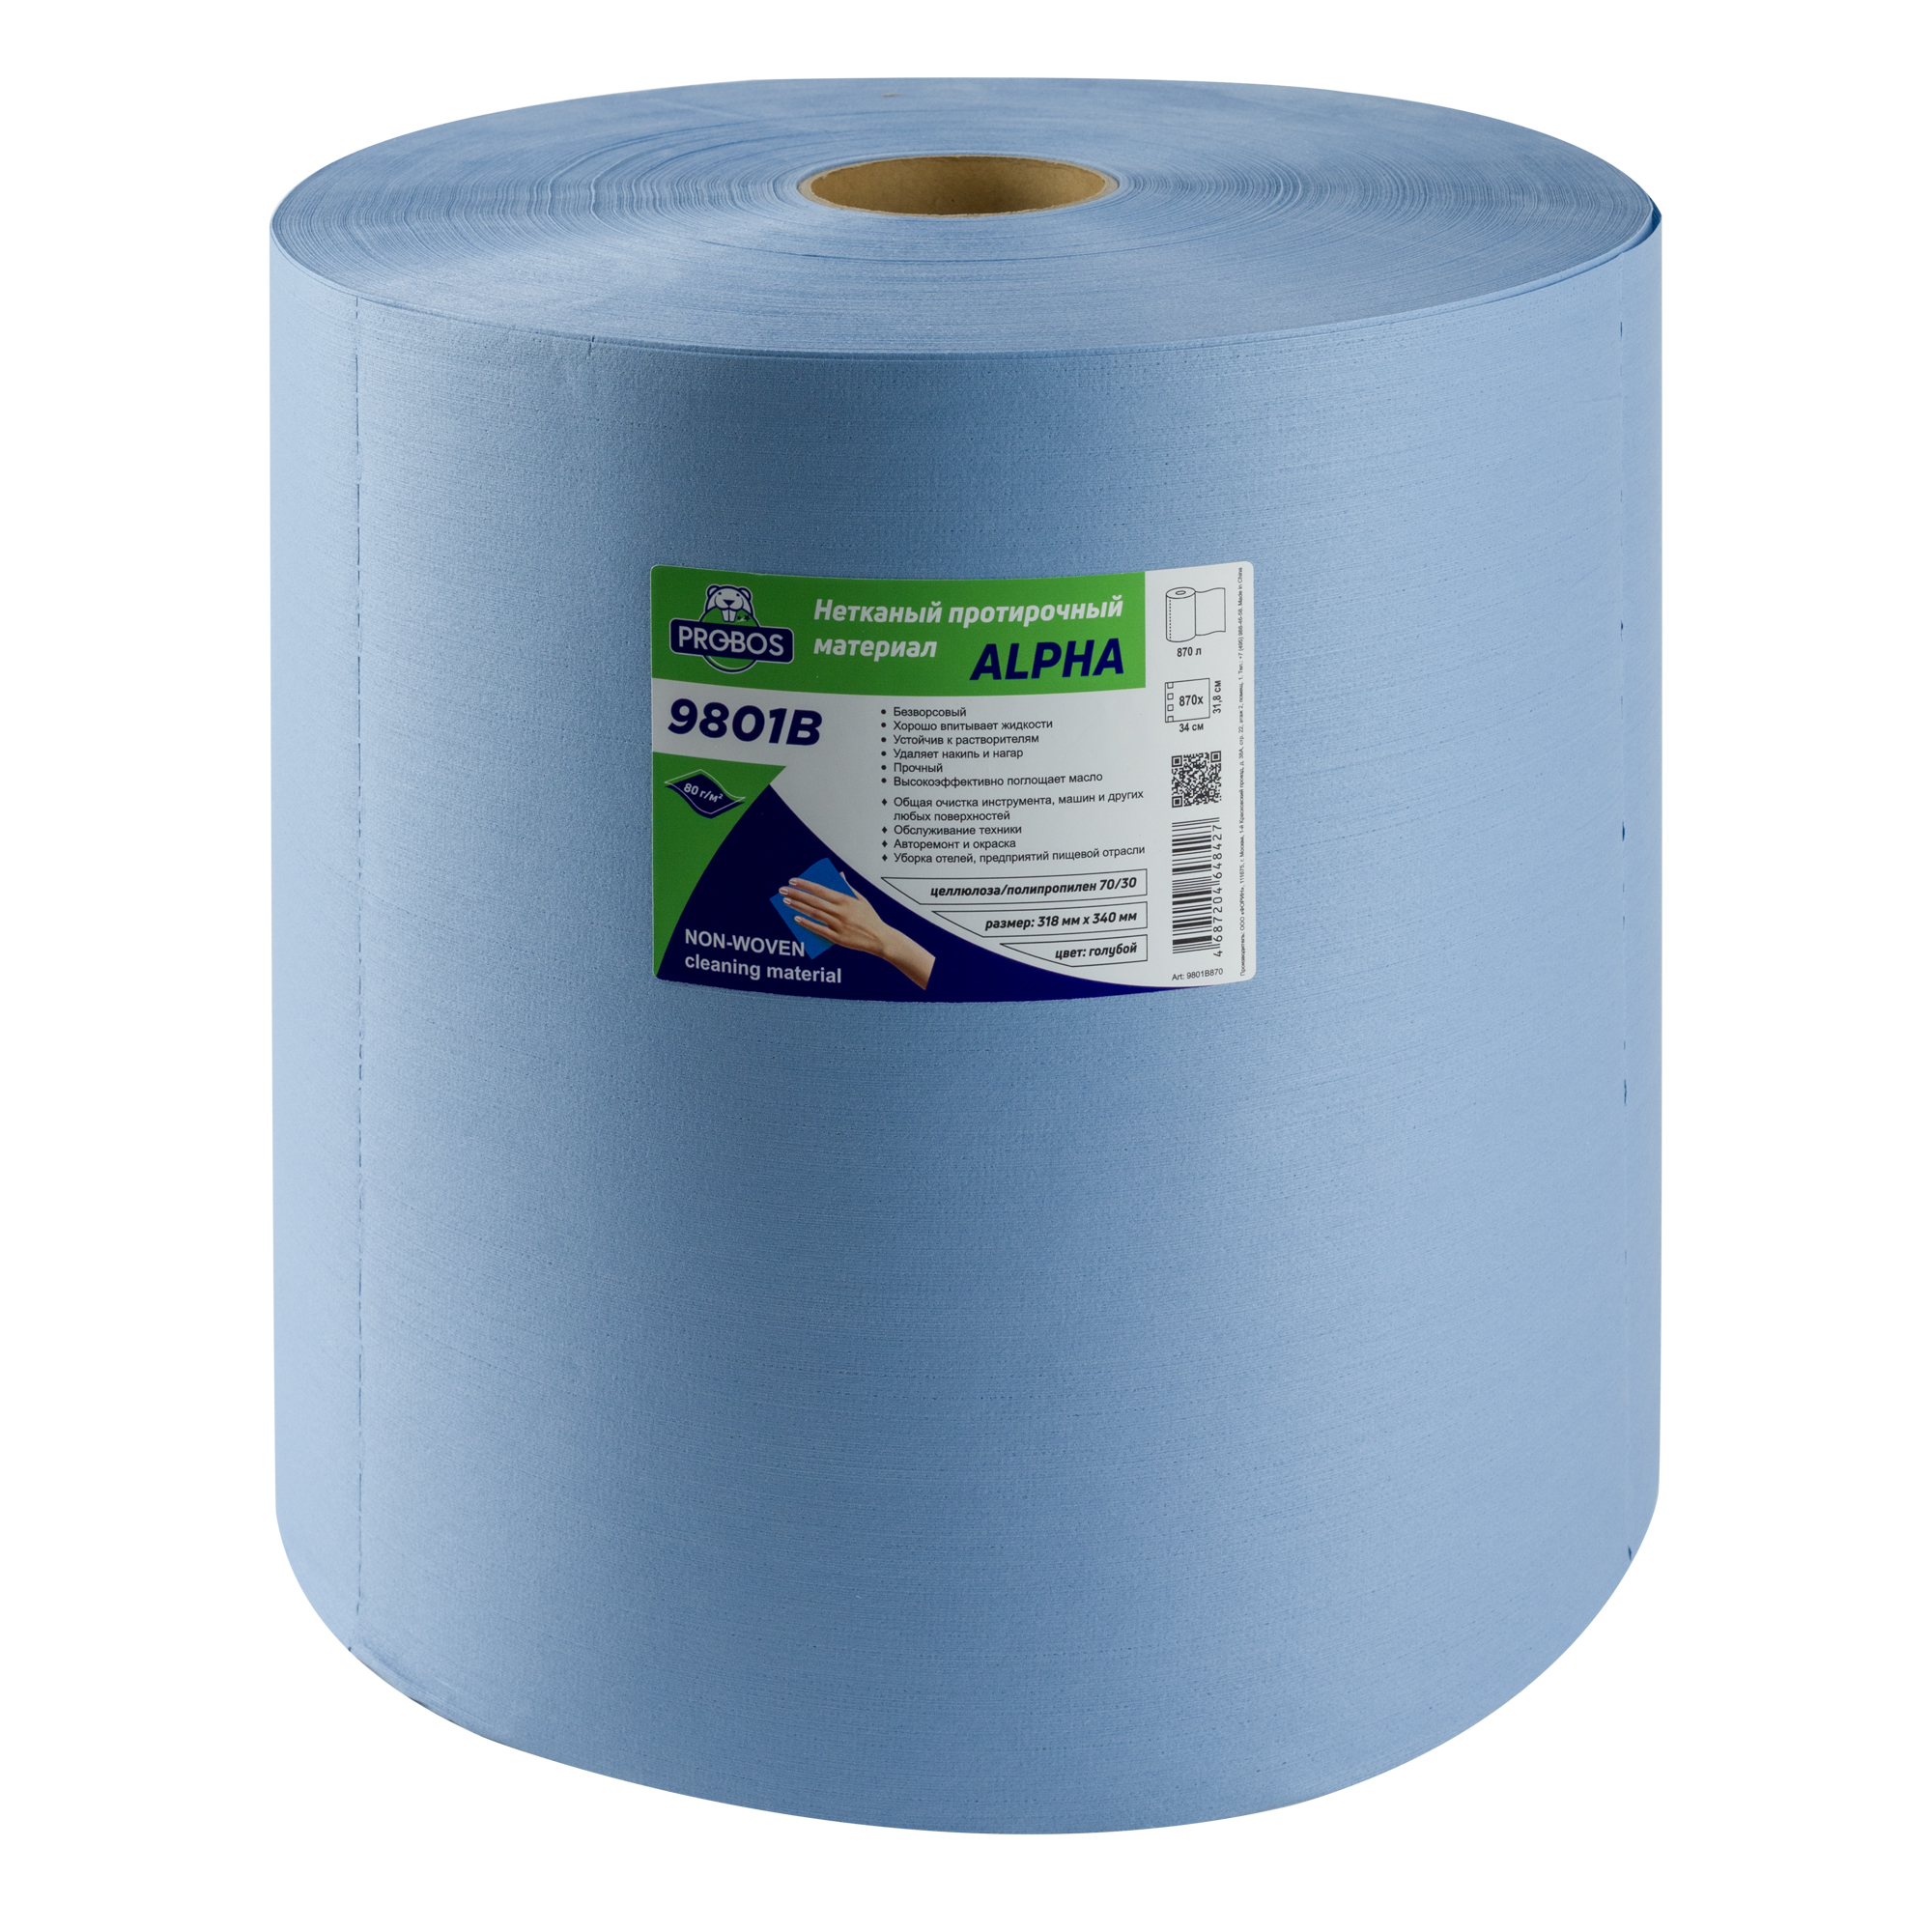 Нетканый протирочный материал PROBOS ALPHA 80 г/м2, голубой, 32х34см, 870 листов